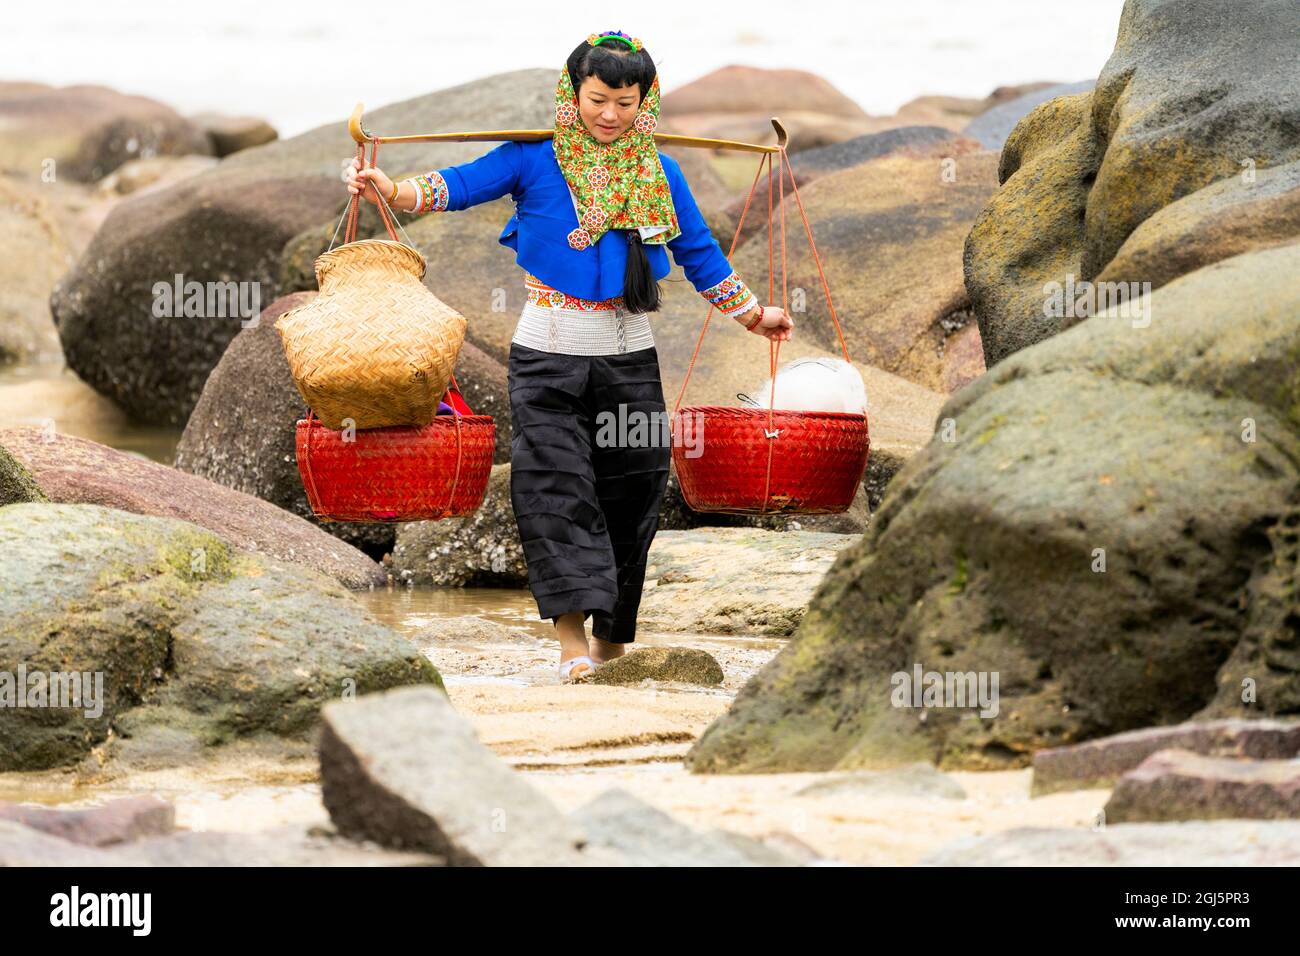 China, Provincia de Fujian, Hui'an. Una mujer con vestido tradicional lleva dos cestas mientras camina sobre las rocas. (Sólo para uso editorial) Foto de stock